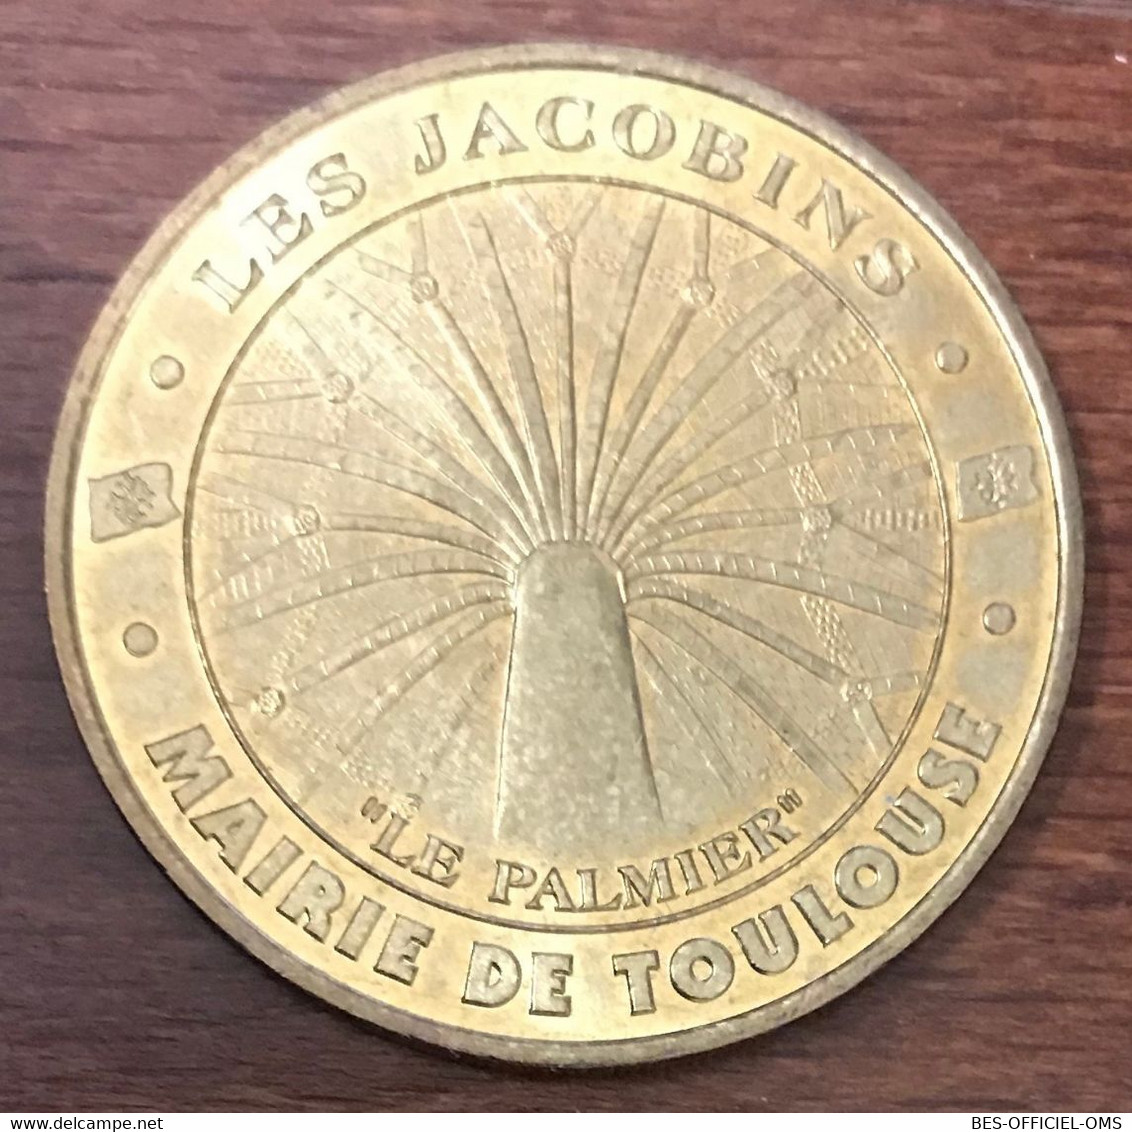 31 TOULOUSE LE PALMIER DES JACOBINS MDP 2001 MÉDAILLE SOUVENIR MONNAIE DE PARIS JETON TOURISTIQUE TOKENS MEDALS COINS - 2001